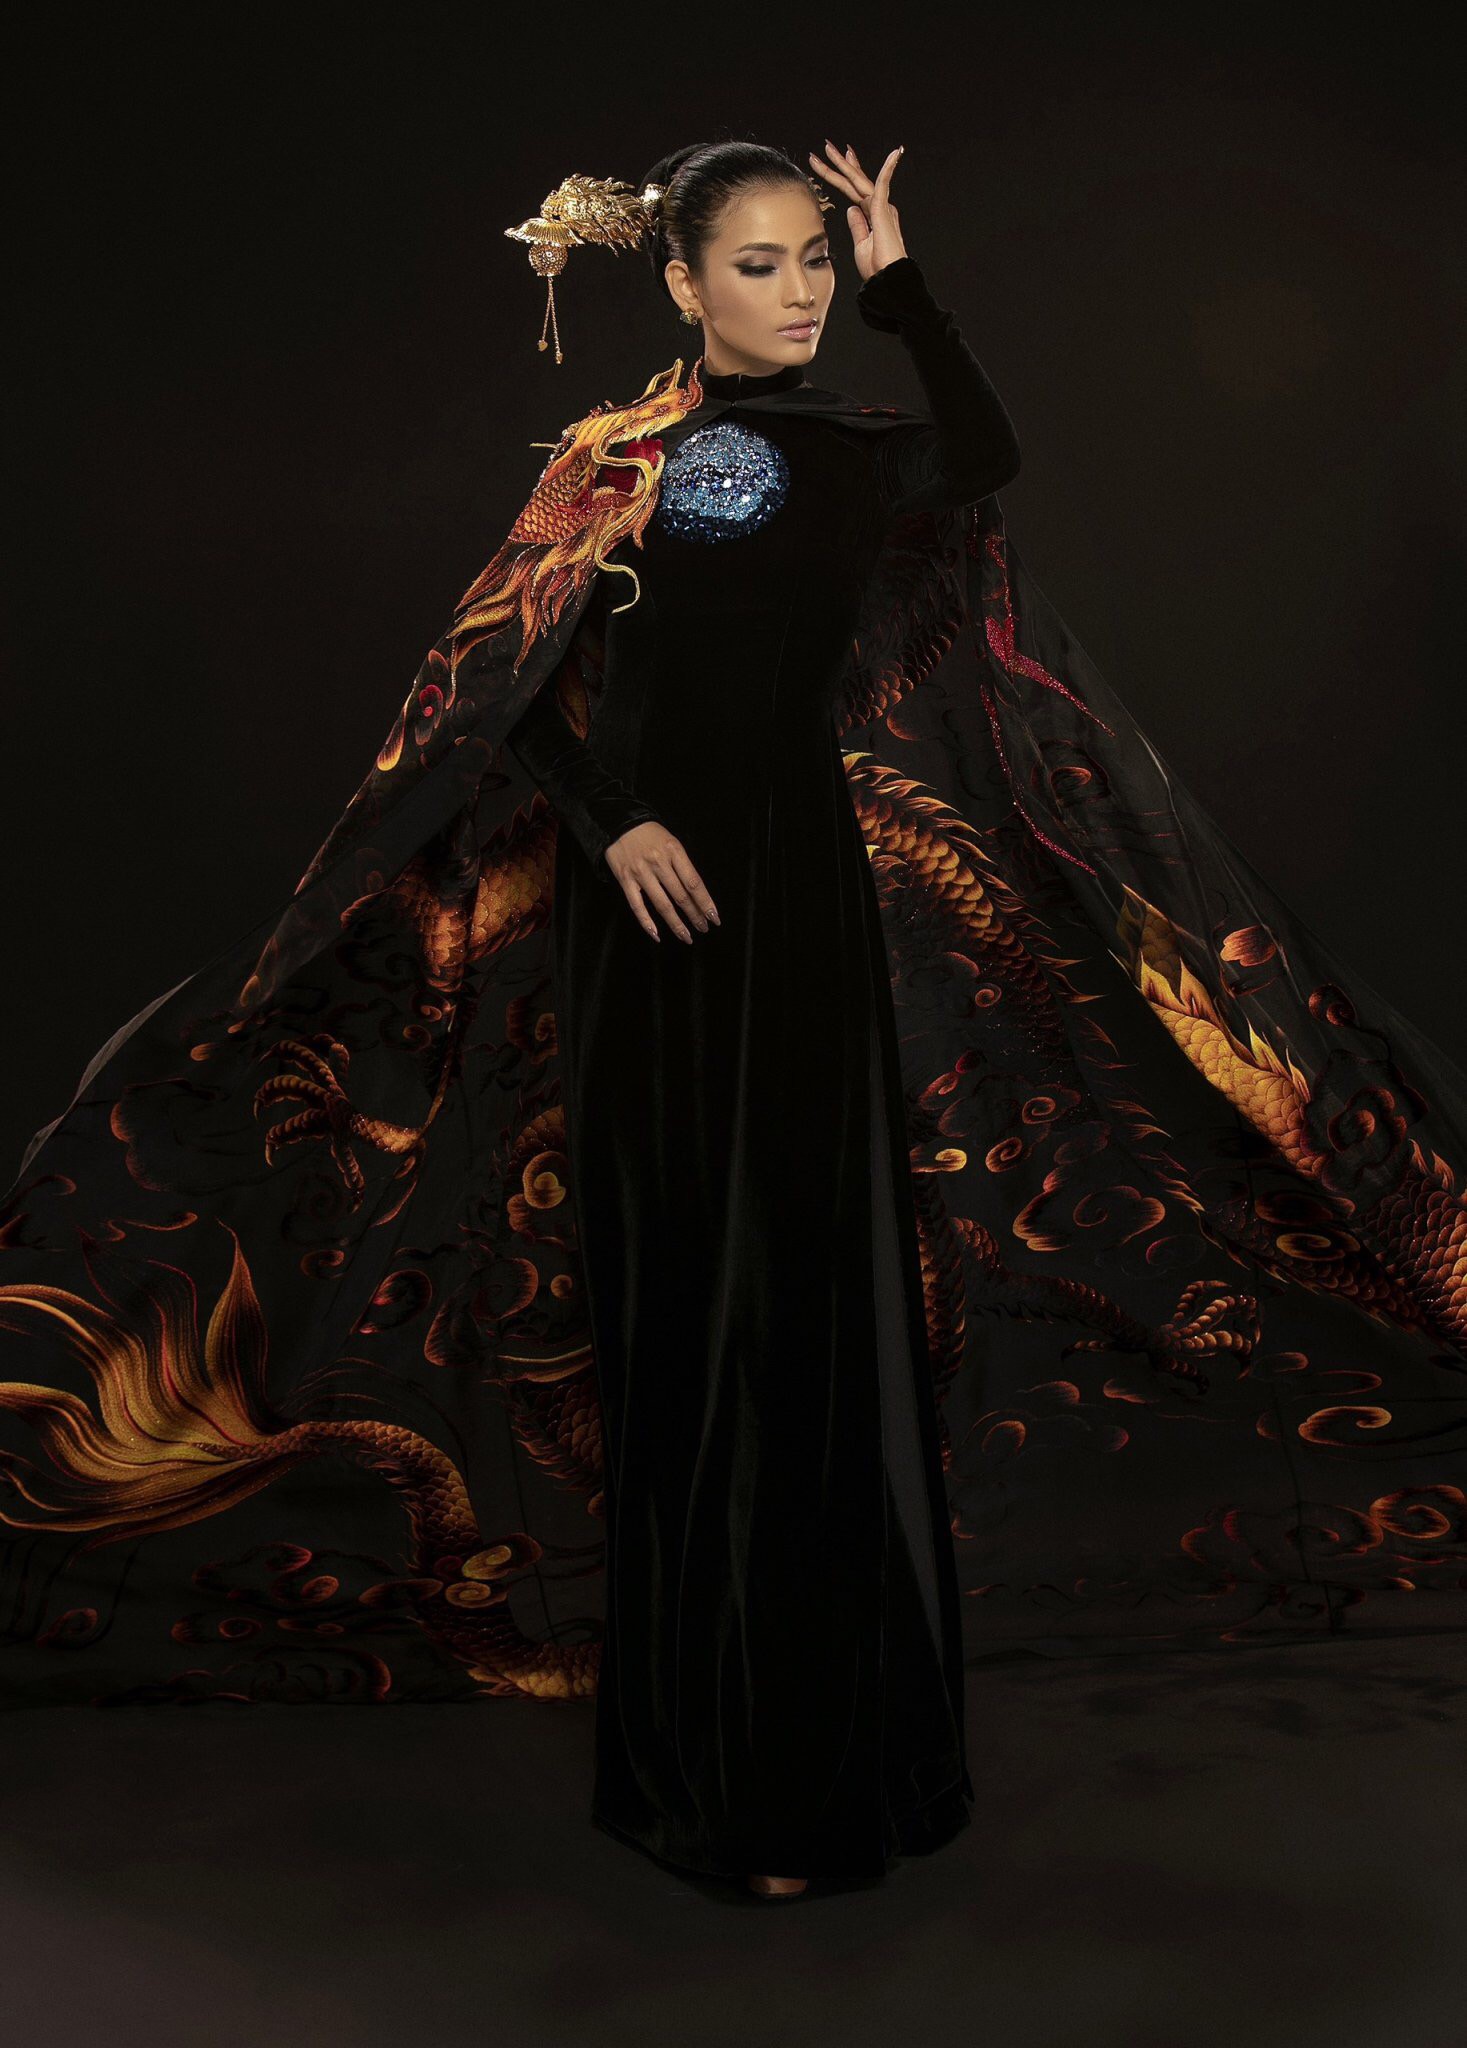 Cận cảnh bộ áo dài giúp Trương Thị May gây ấn tượng sau màn xuất hiện phô phang của Ngọc Trinh tại Cannes 2019  - Ảnh 3.